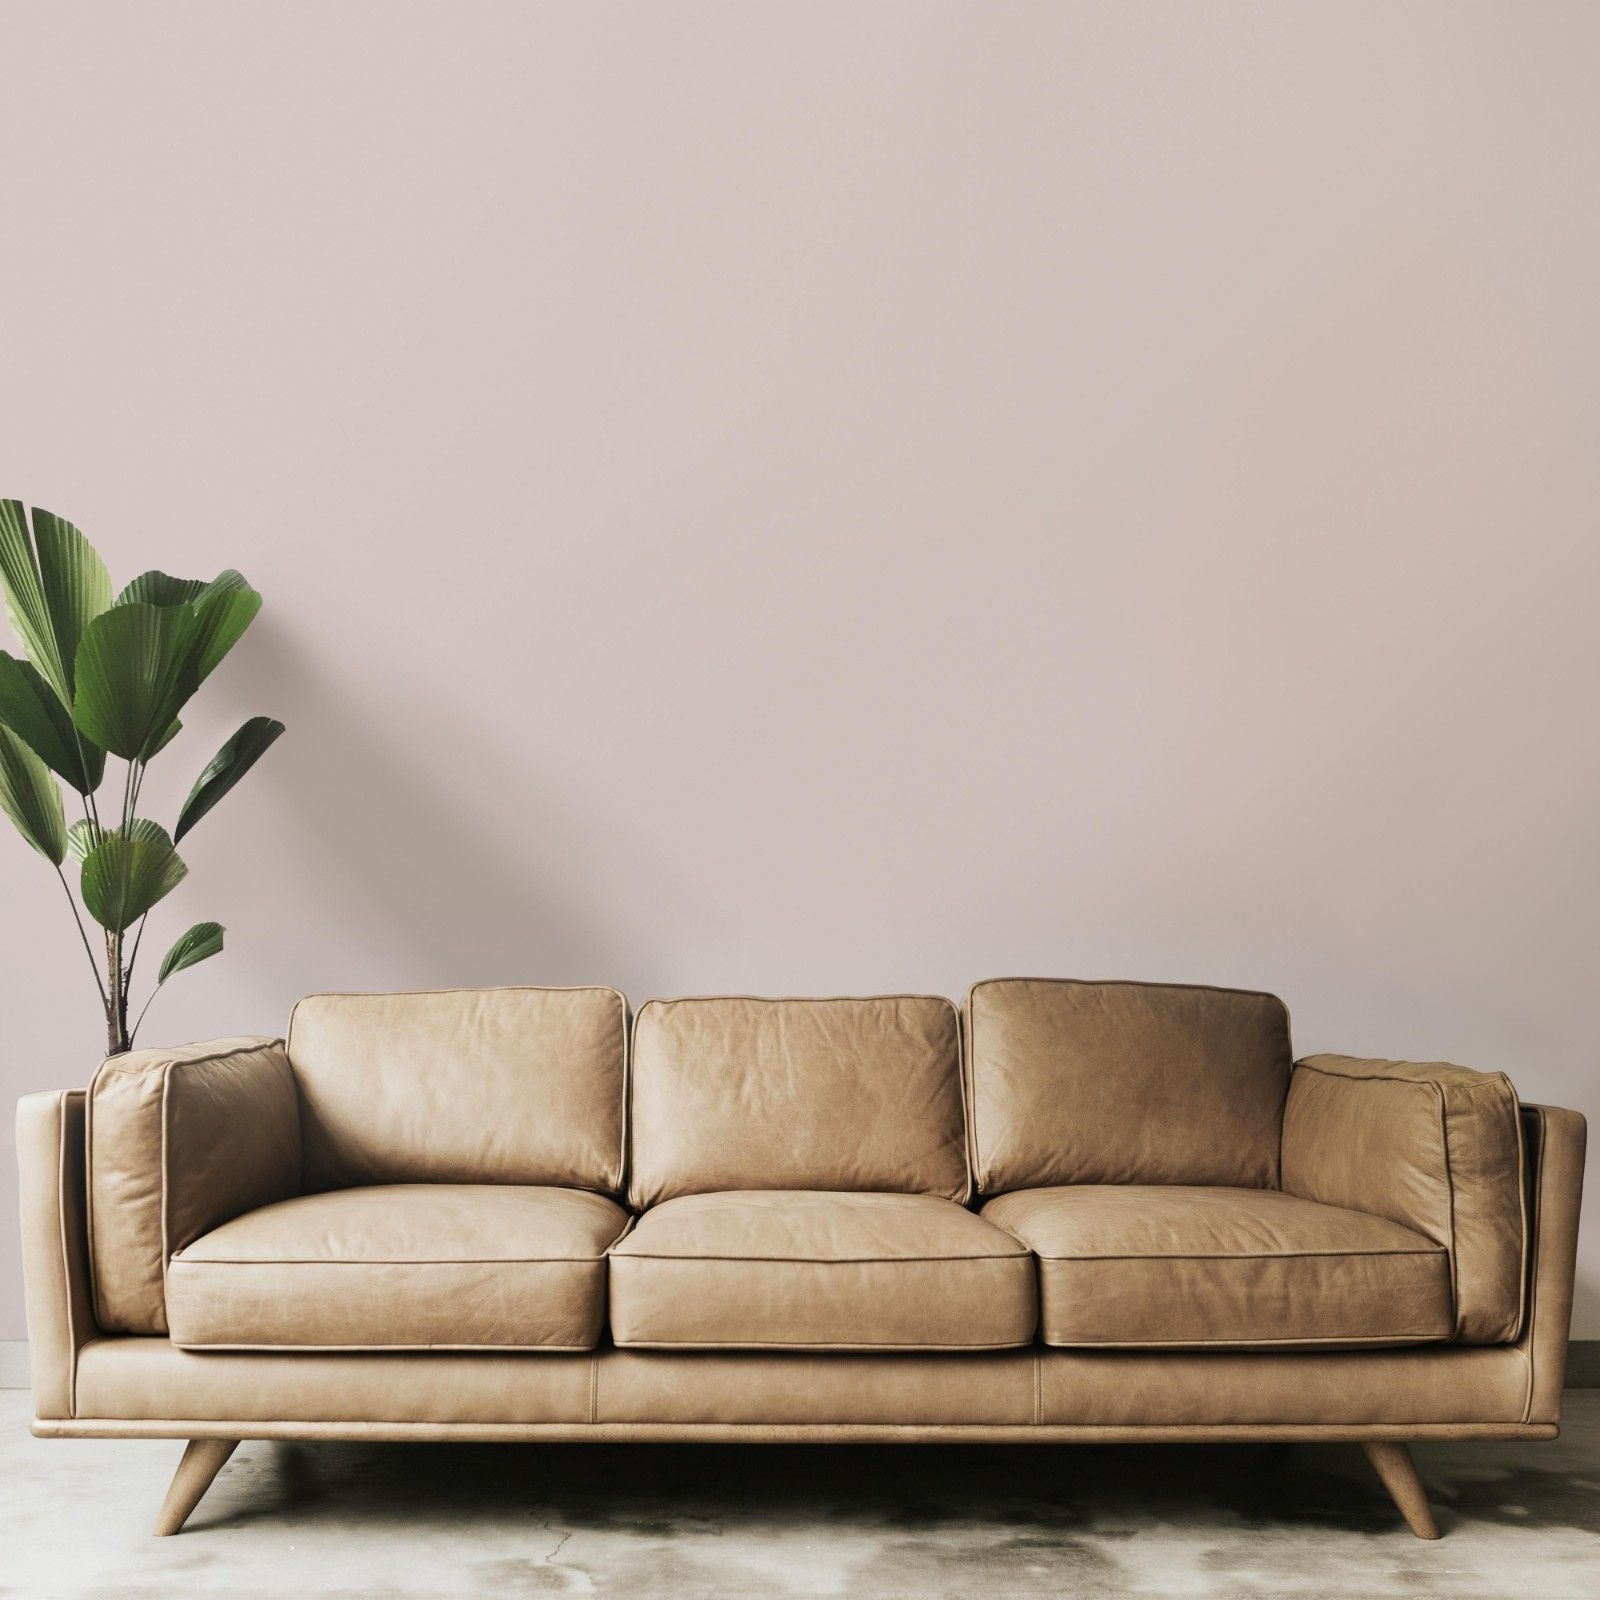 Nachhaltige greige Wandfarbe Fashion Week von Mynt mit einem braunen Sofa und einer grünen Pflanze.